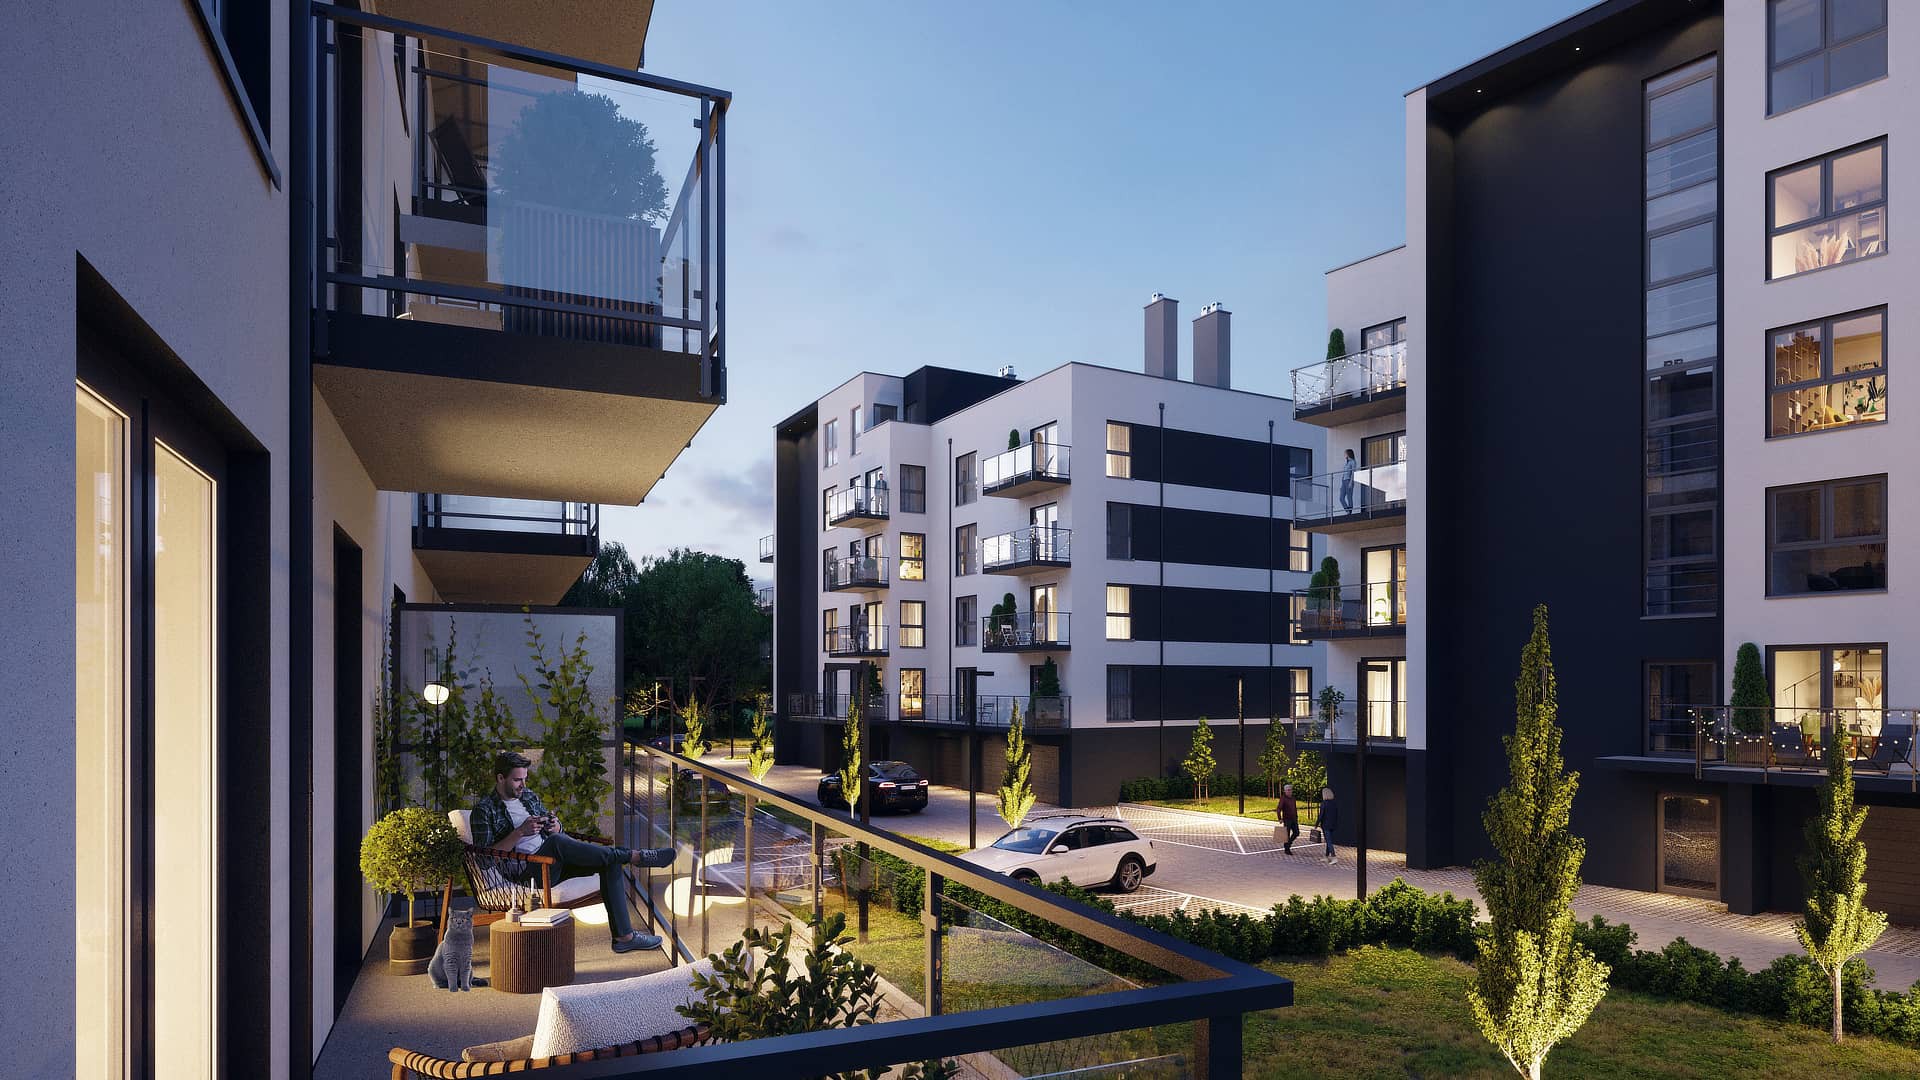 Rusza sprzedaż mieszkań w nowych apartamentowcach Formeli17 w Rumi.